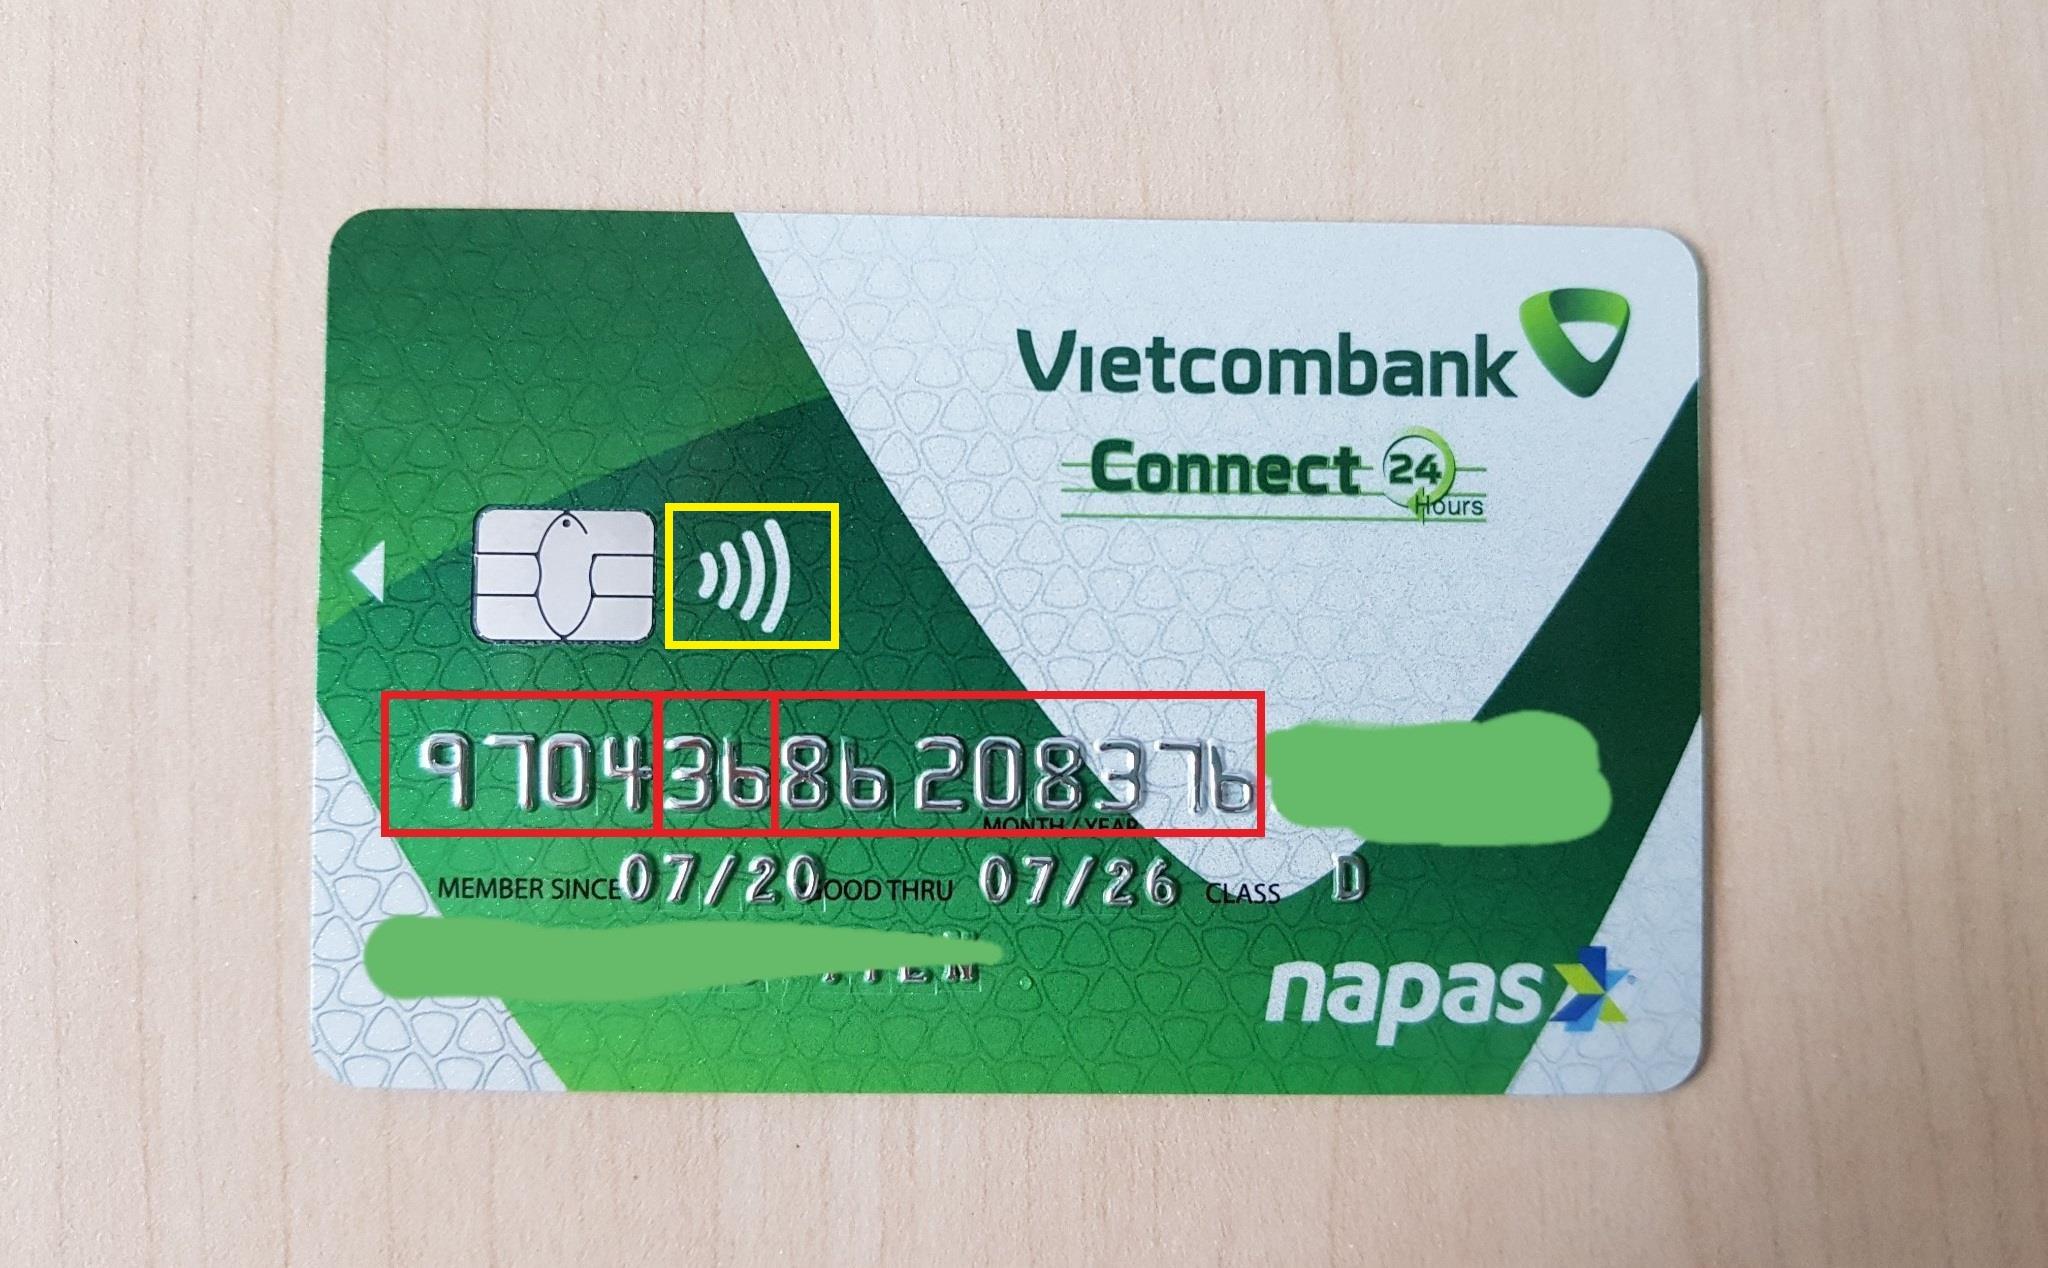 Tìm hiểu Số in nổi trên thẻ ATM là gì và ý nghĩa của nó